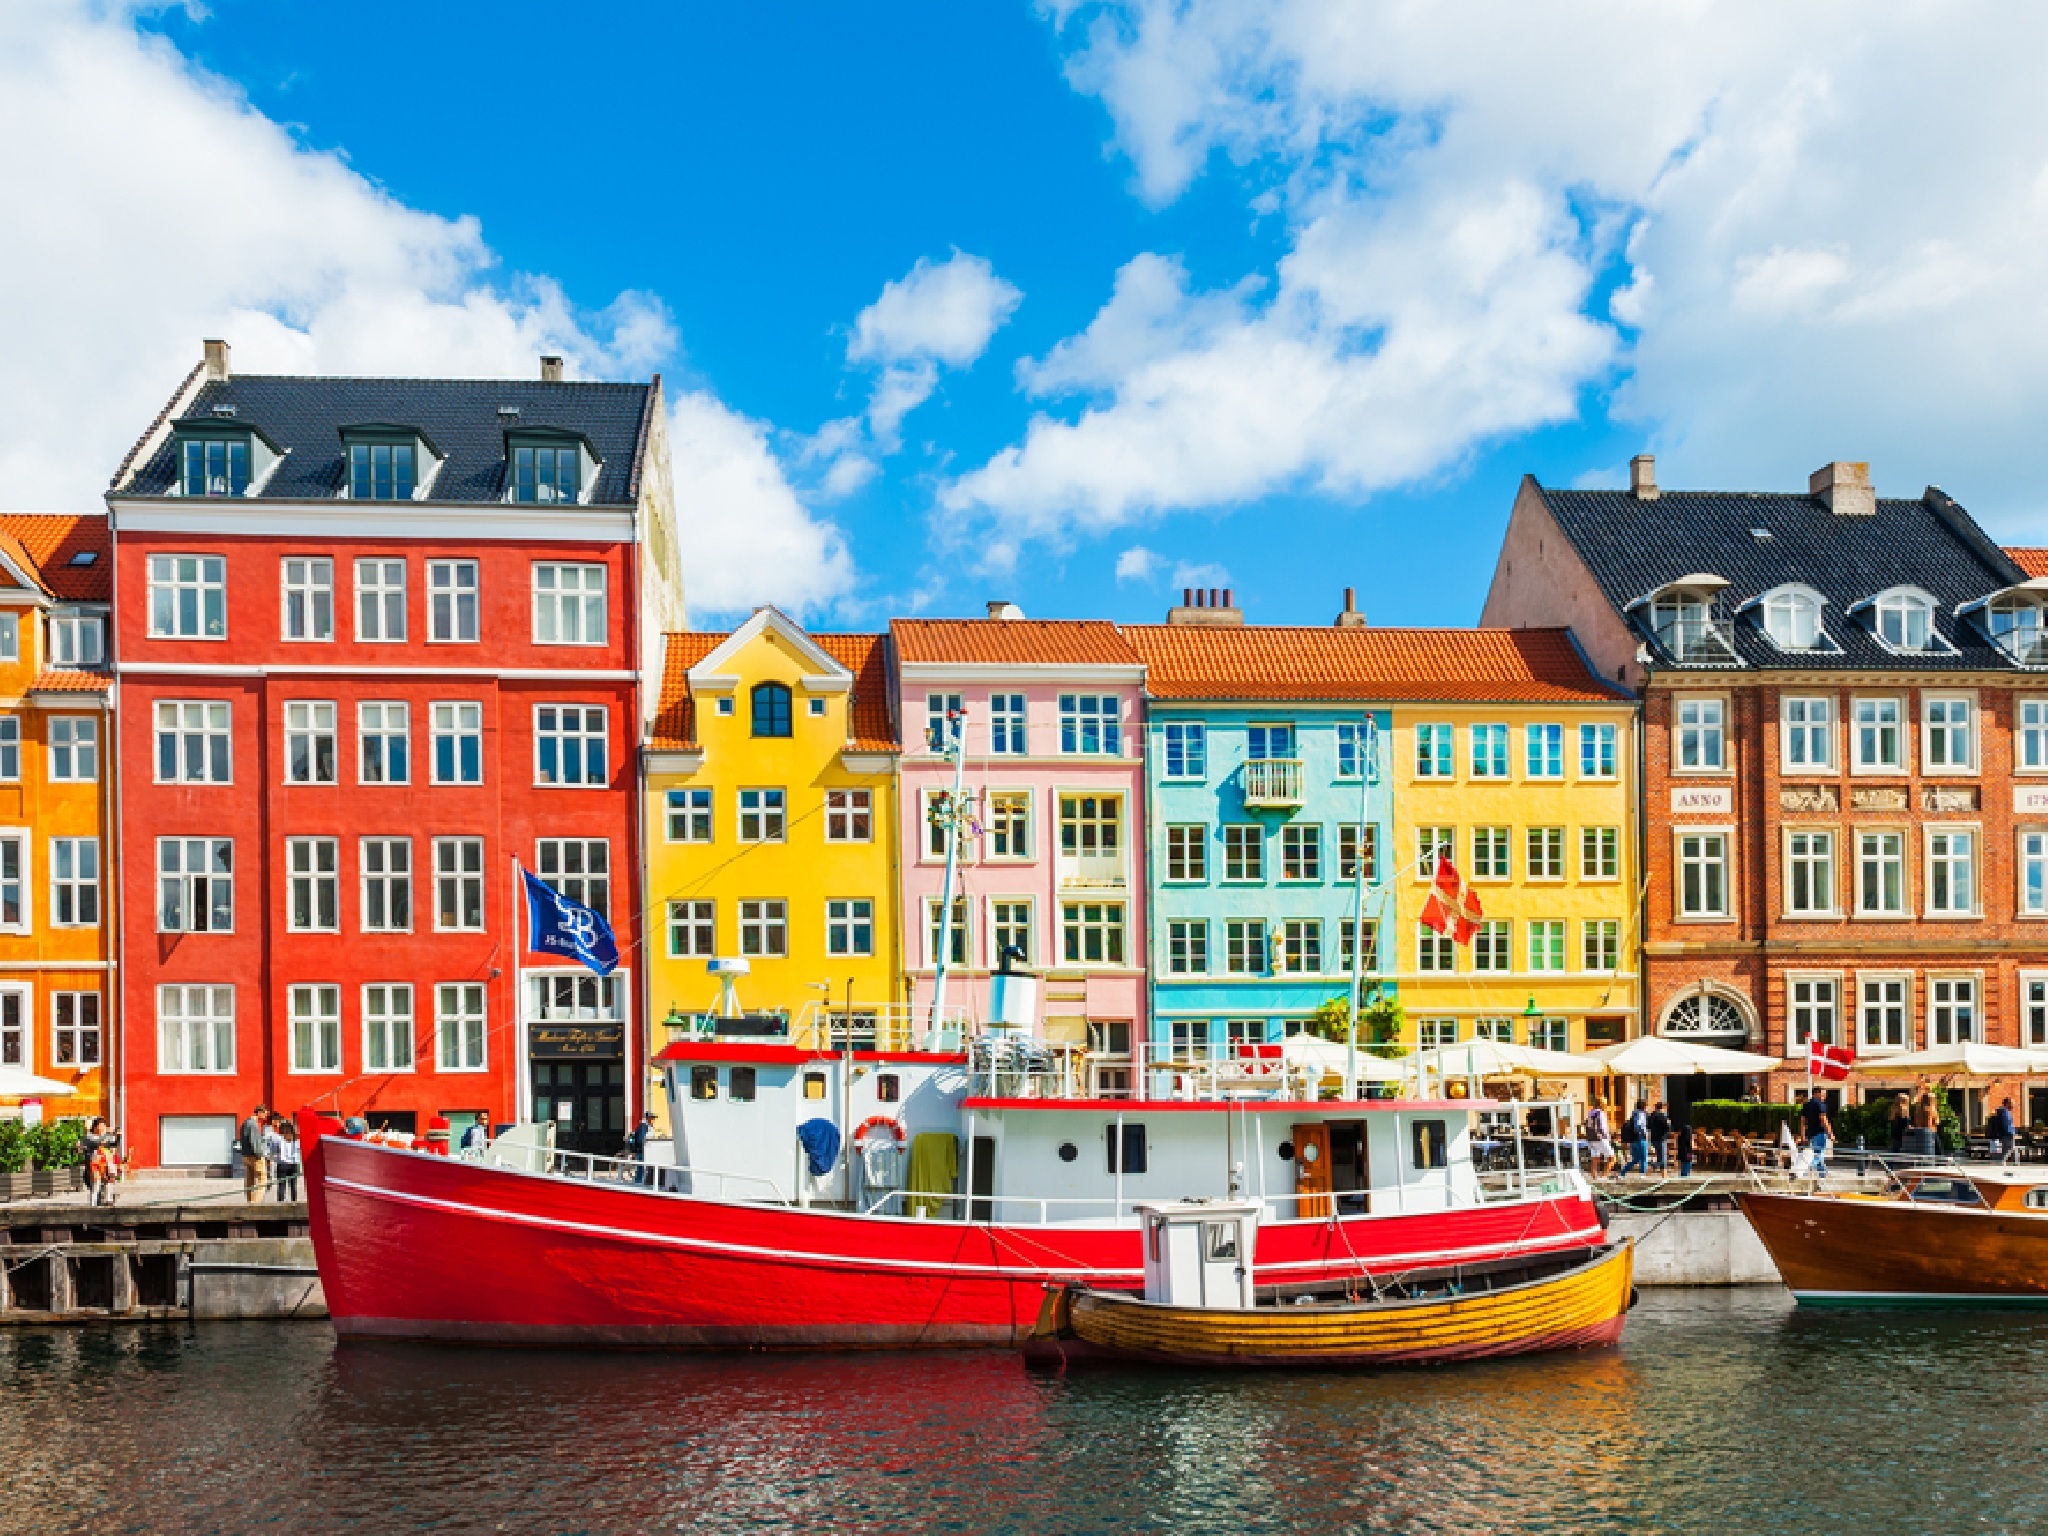 Copenhagen waterway with boats